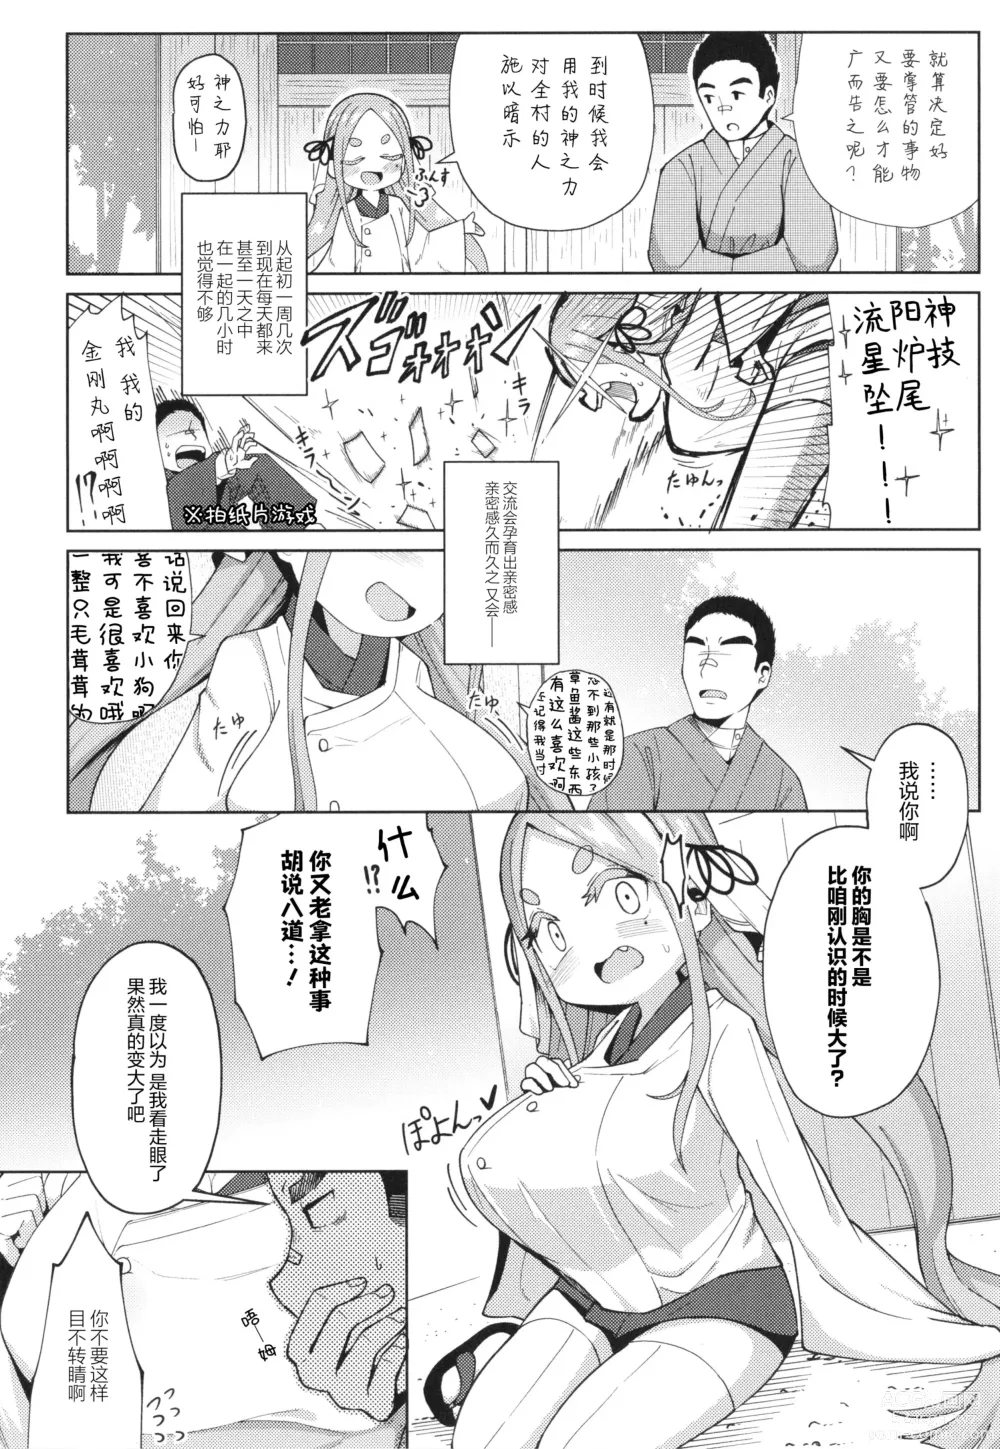 Page 6 of manga En